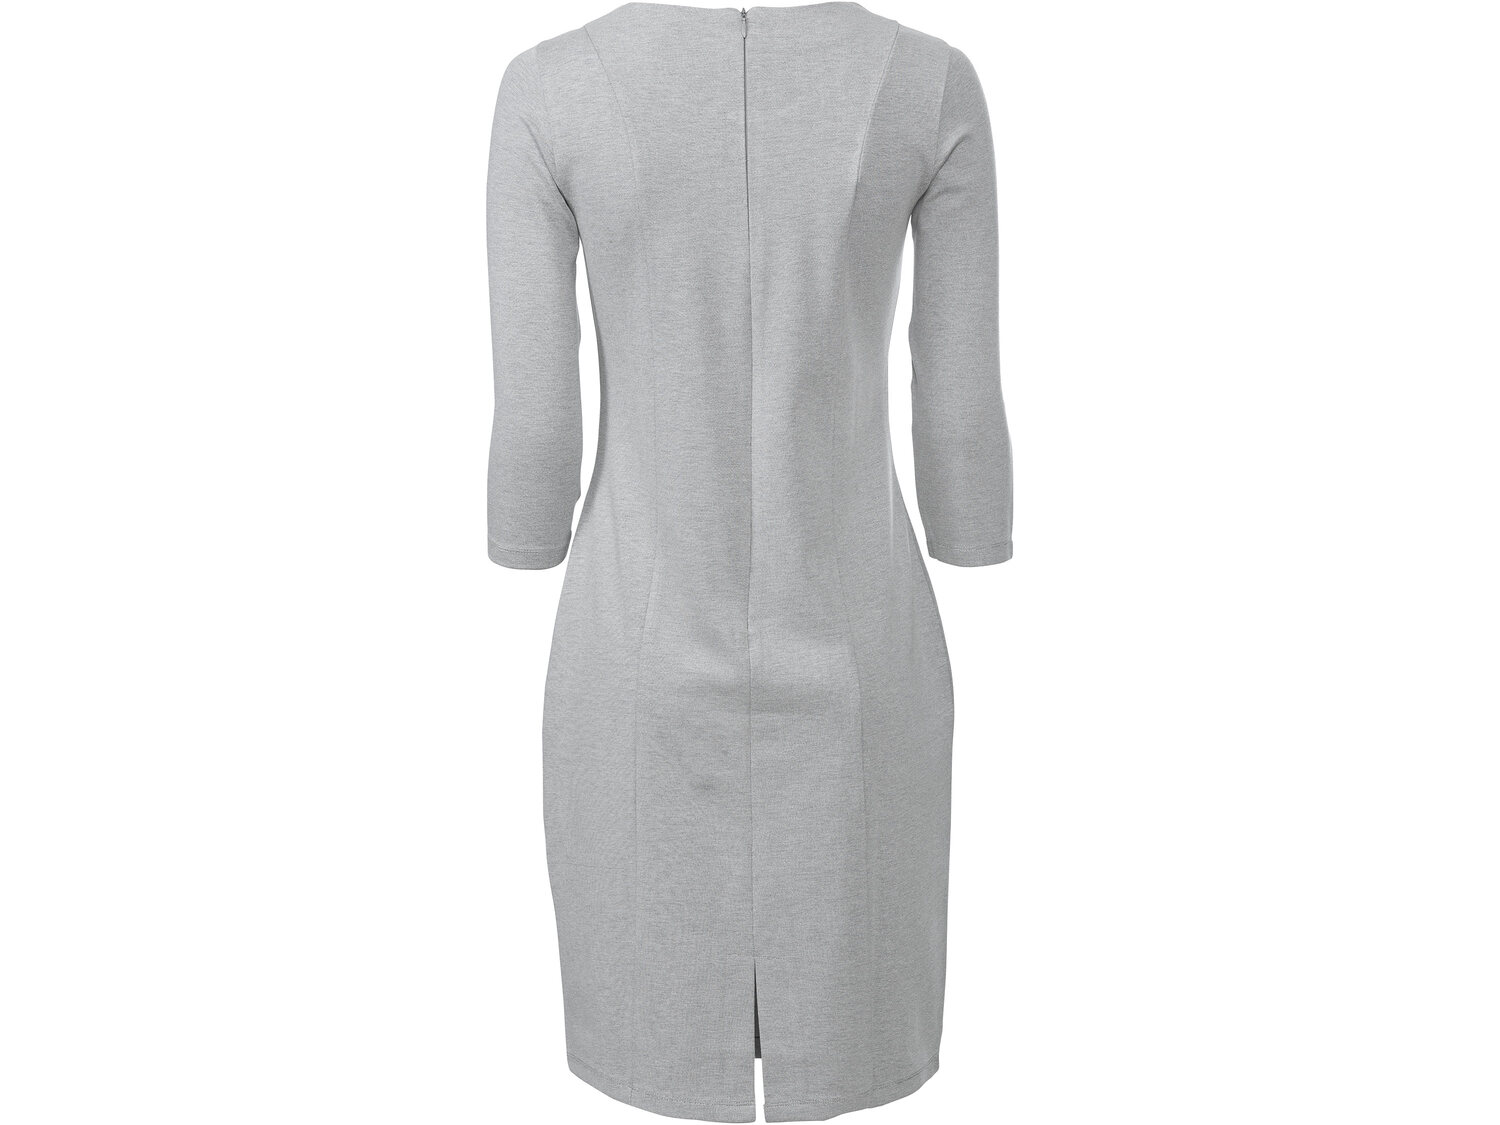 Sukienka z wiskozą Esmara, cena 44,99 PLN 
- klasyczny kr&oacute;j
- rozmiary: ...